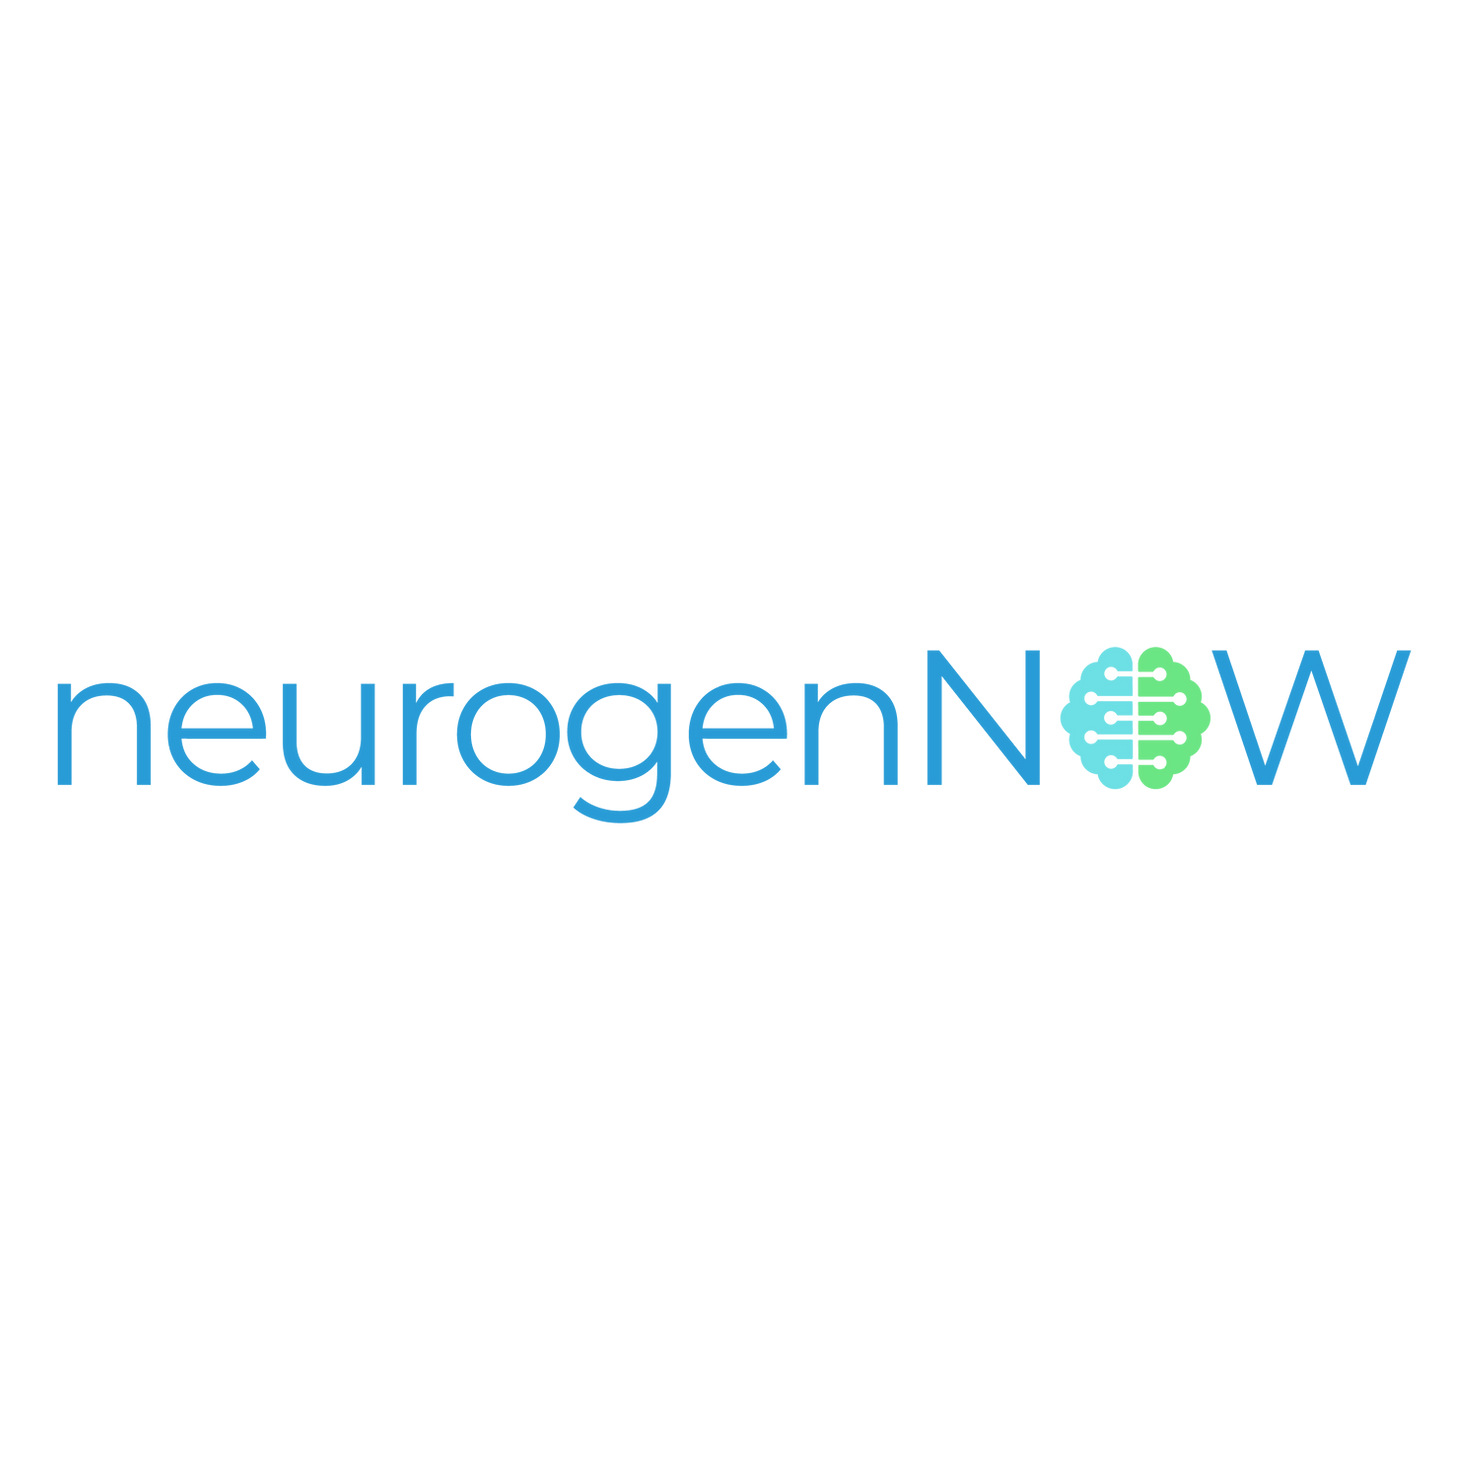 neurogenNOW